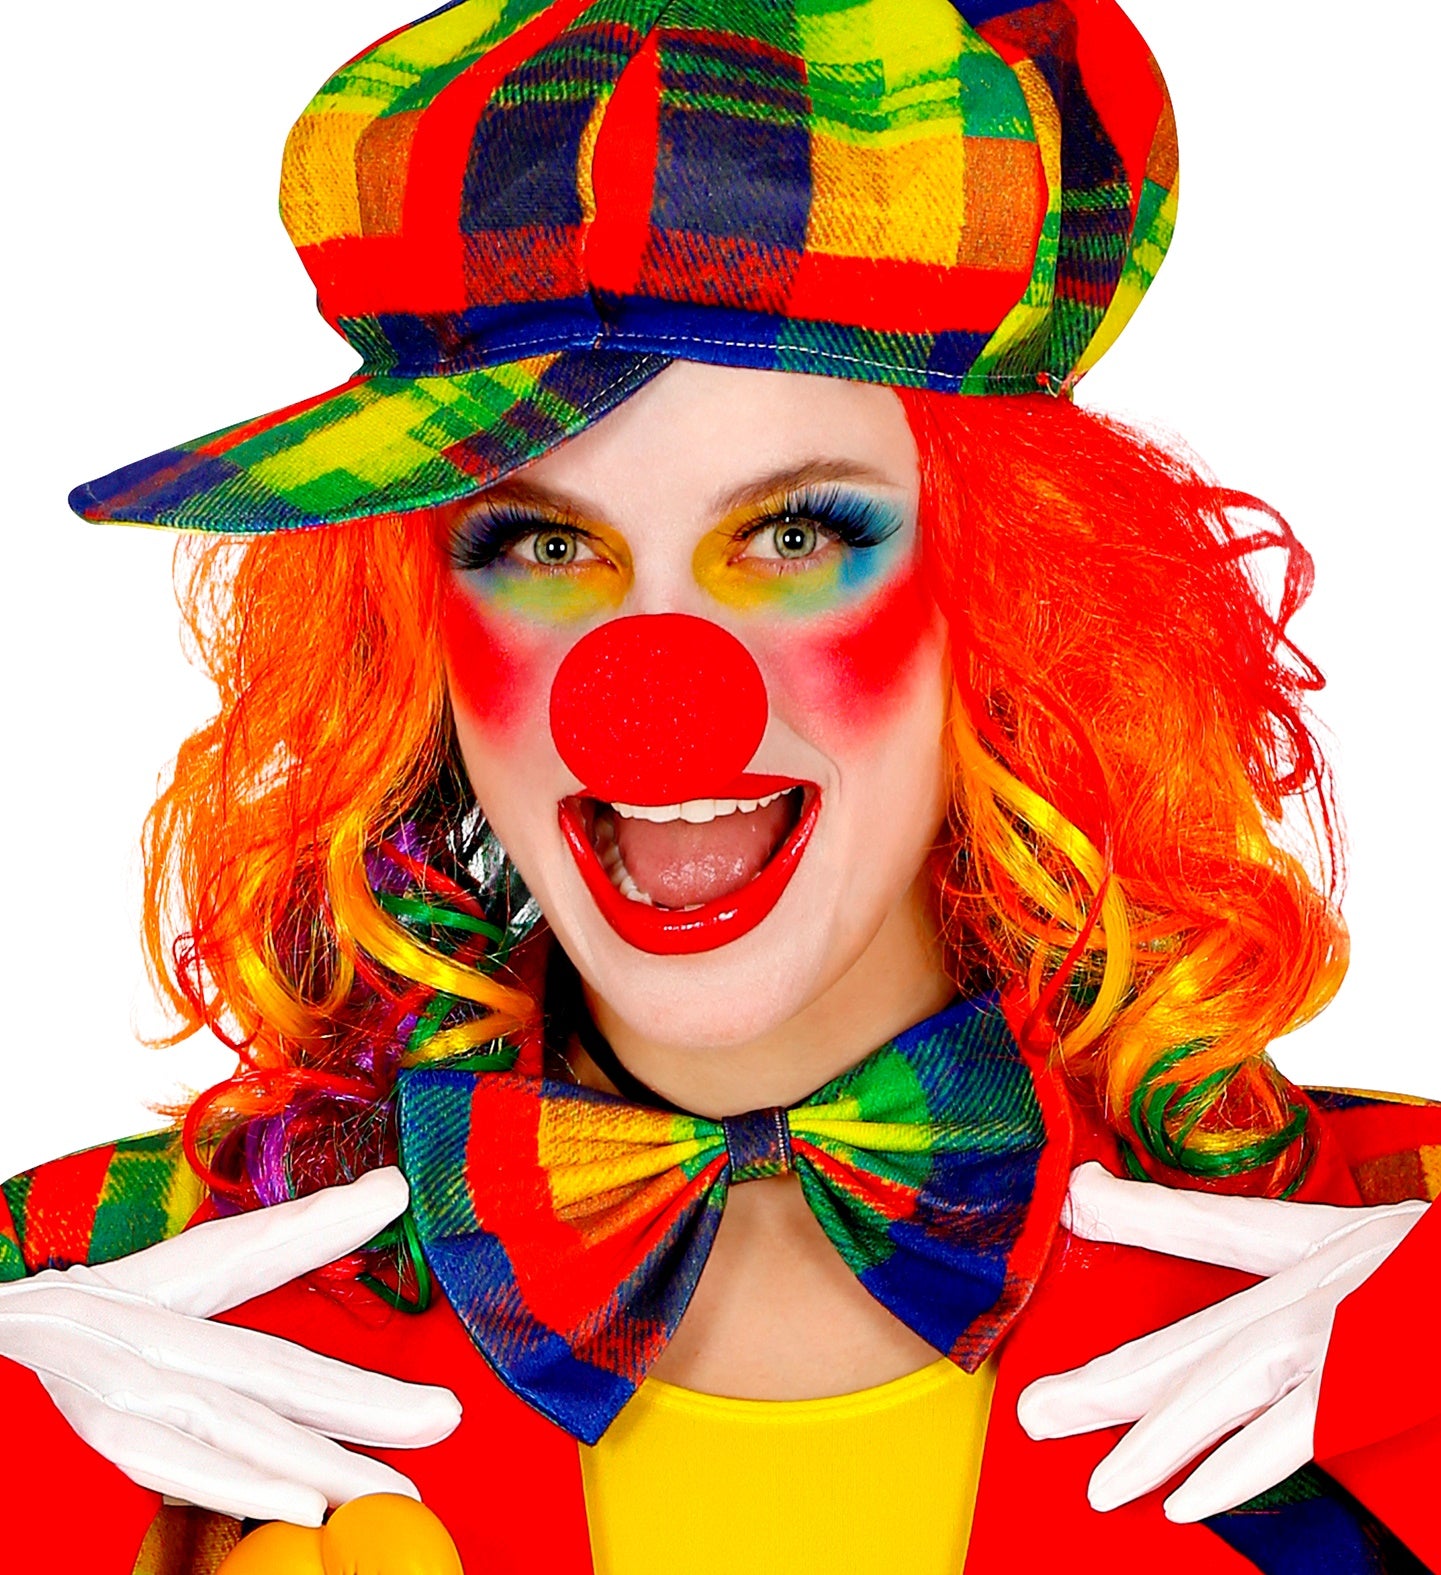 Clown Bow Tie Rainbow